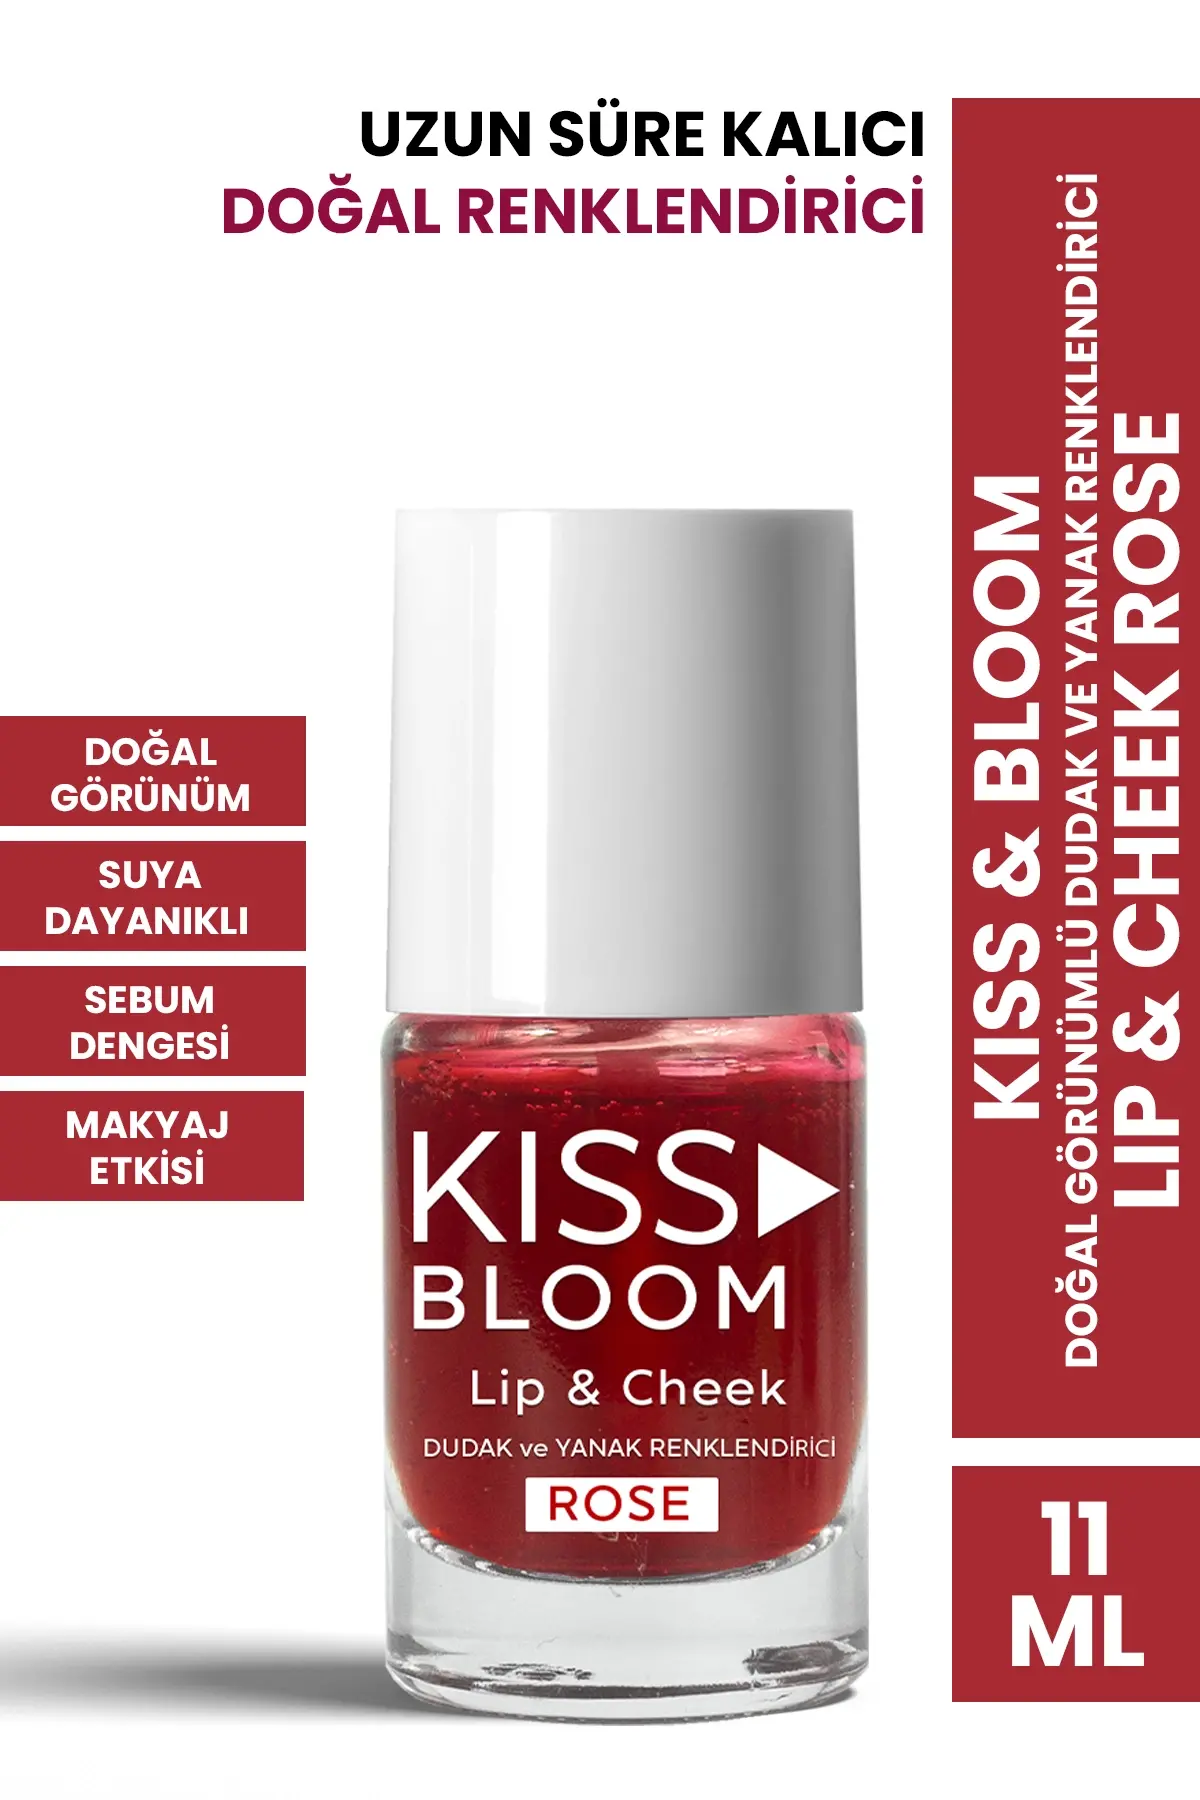 KISS & BLOOM Lip & Cheek Rose 11 ml - 1